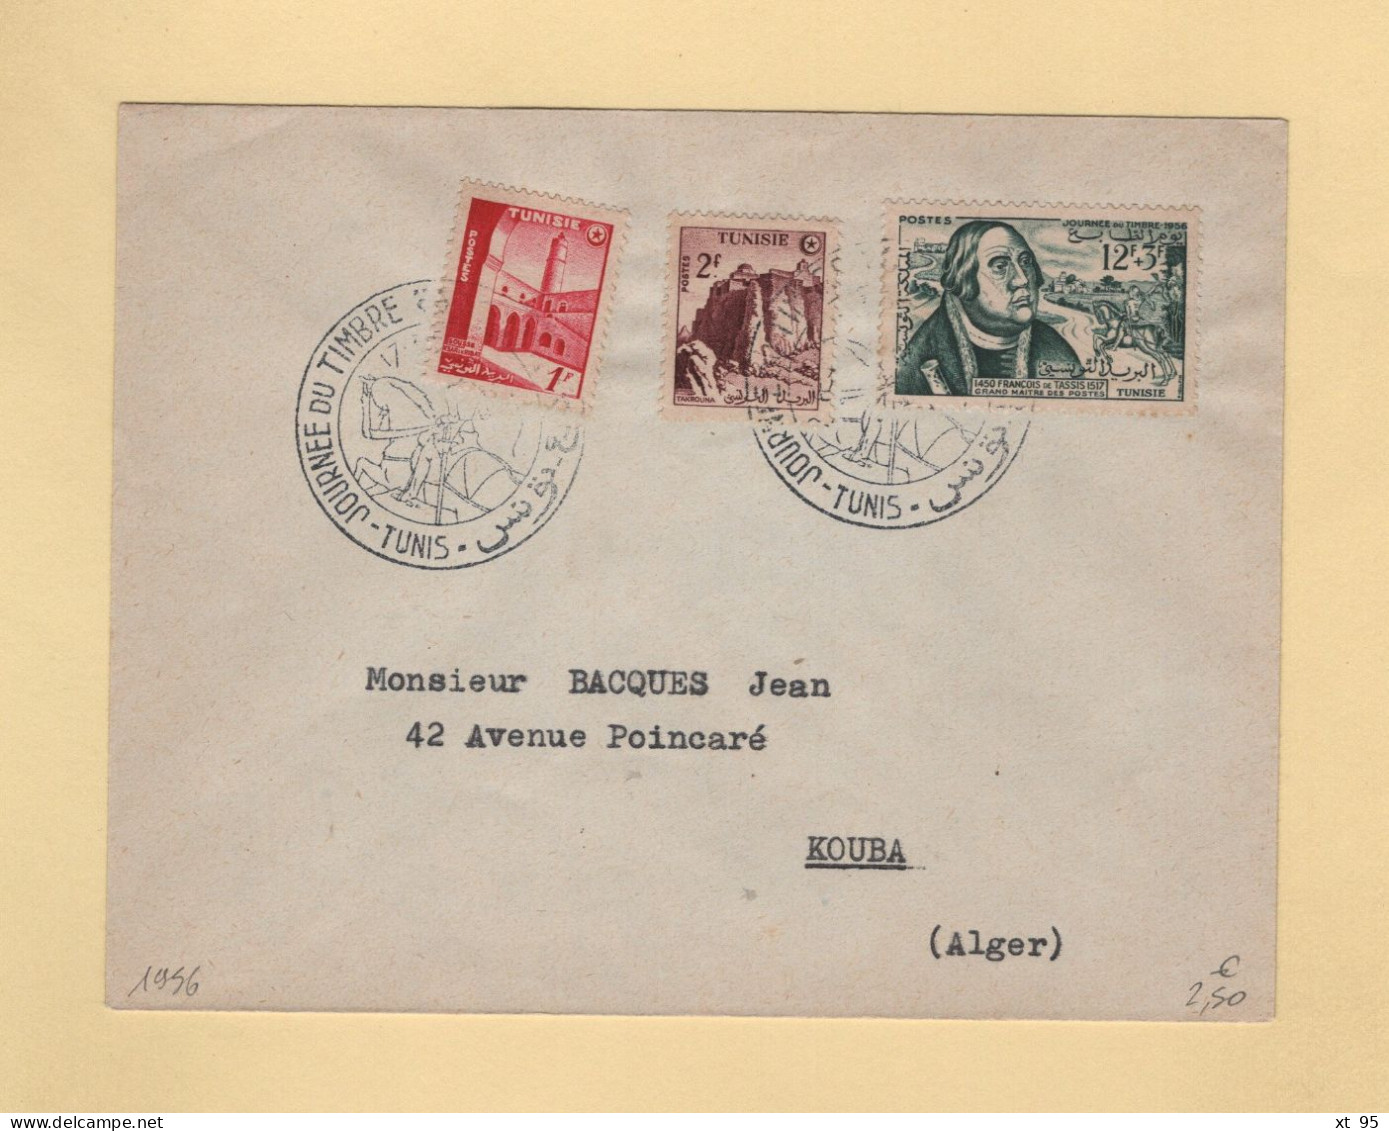 Tunisie - Journee Du Timbre - 1956 - Briefe U. Dokumente